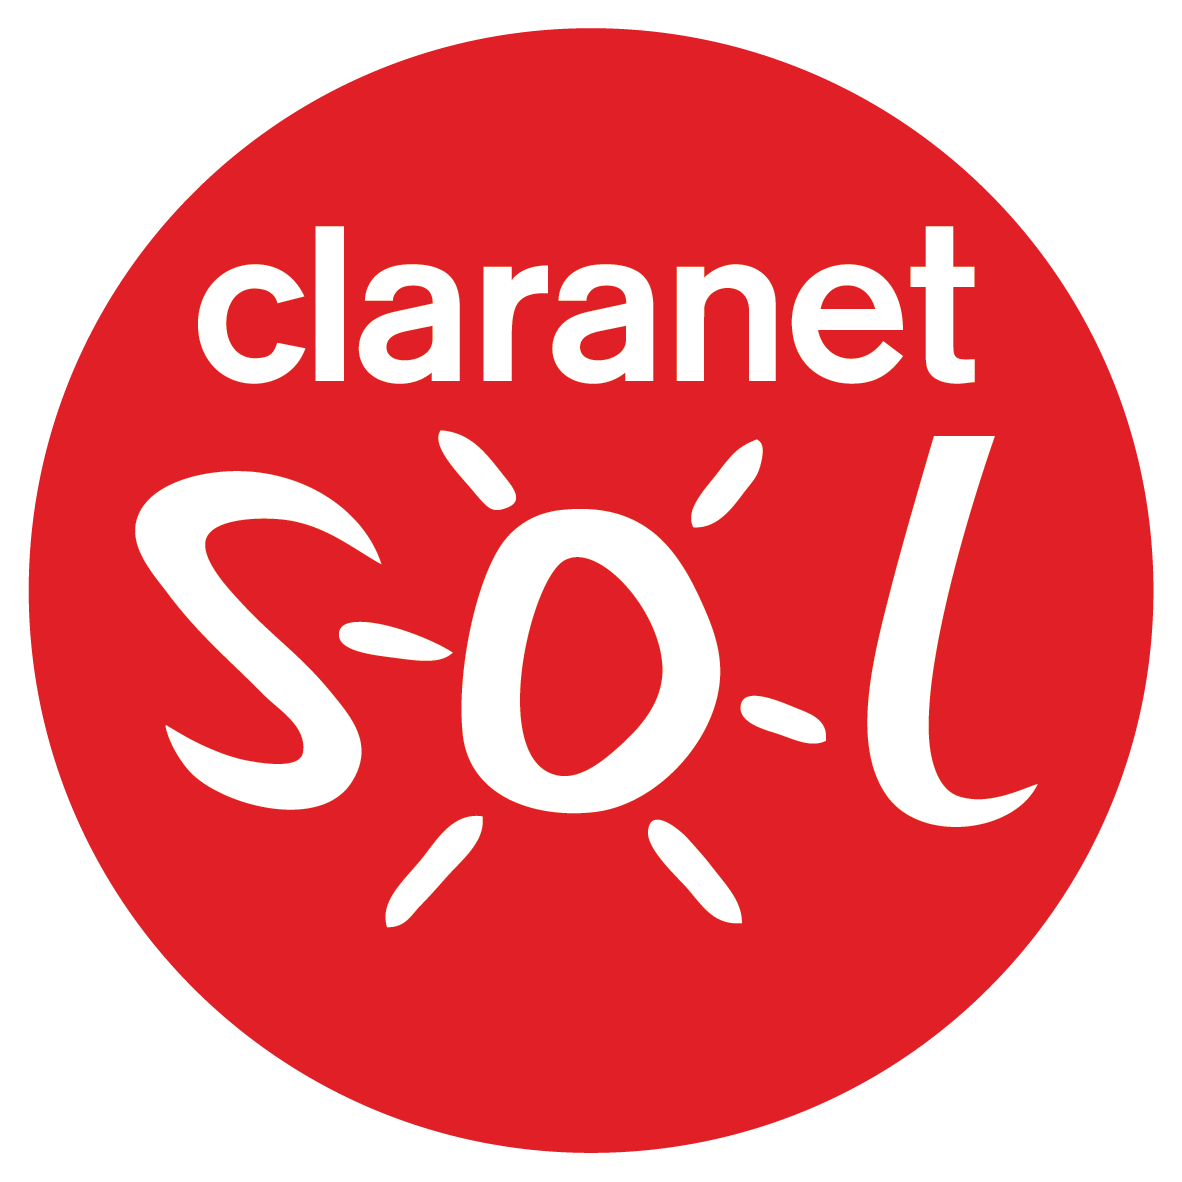 Claranet Sol